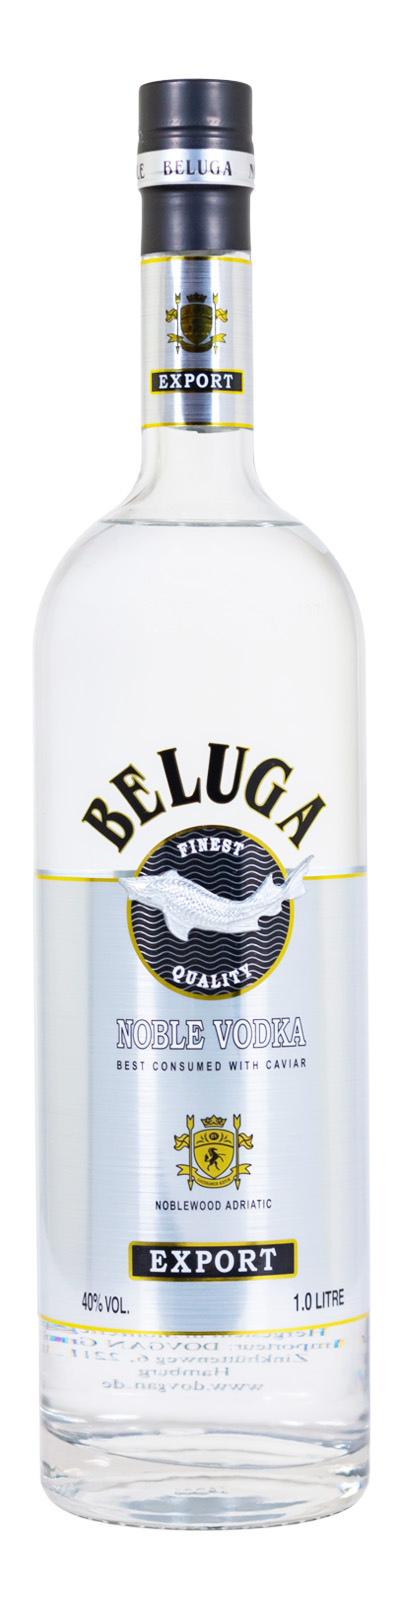 Beluga Noble Vodka - 1 Liter 40% vol